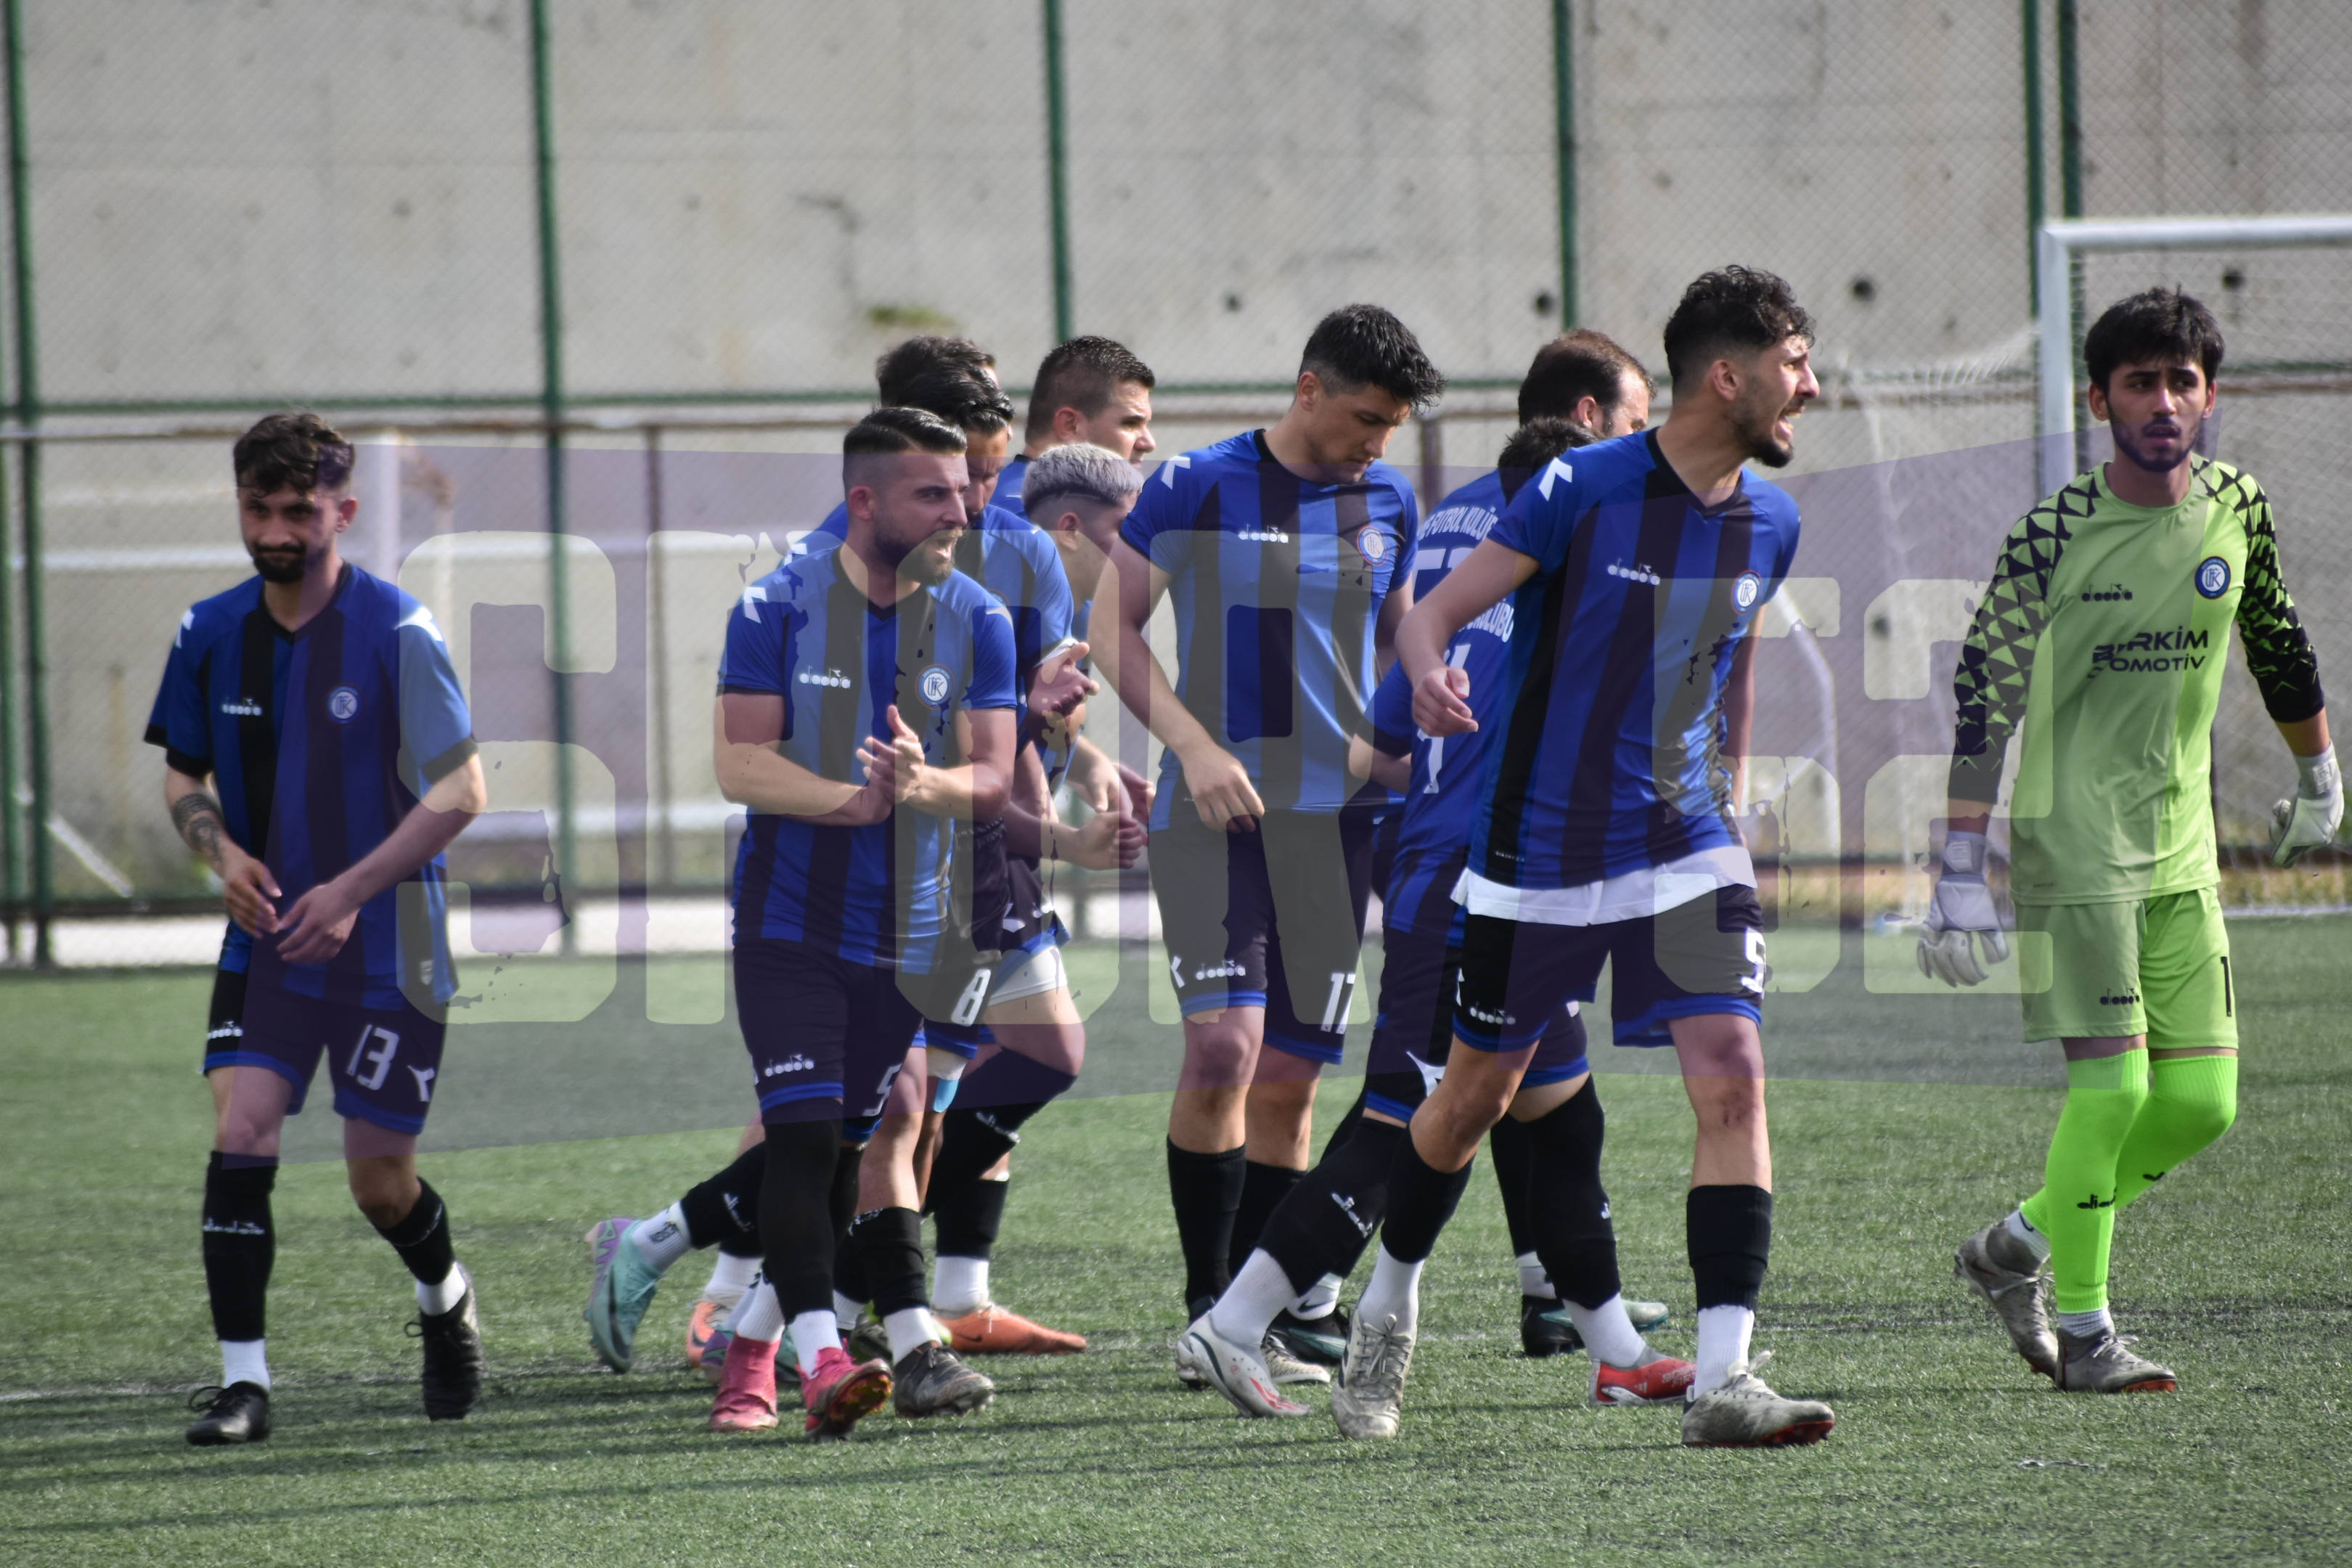  Kaleciler Atıldı, Şampiyon Ünye Futbol Kulübü Oldu 2-5